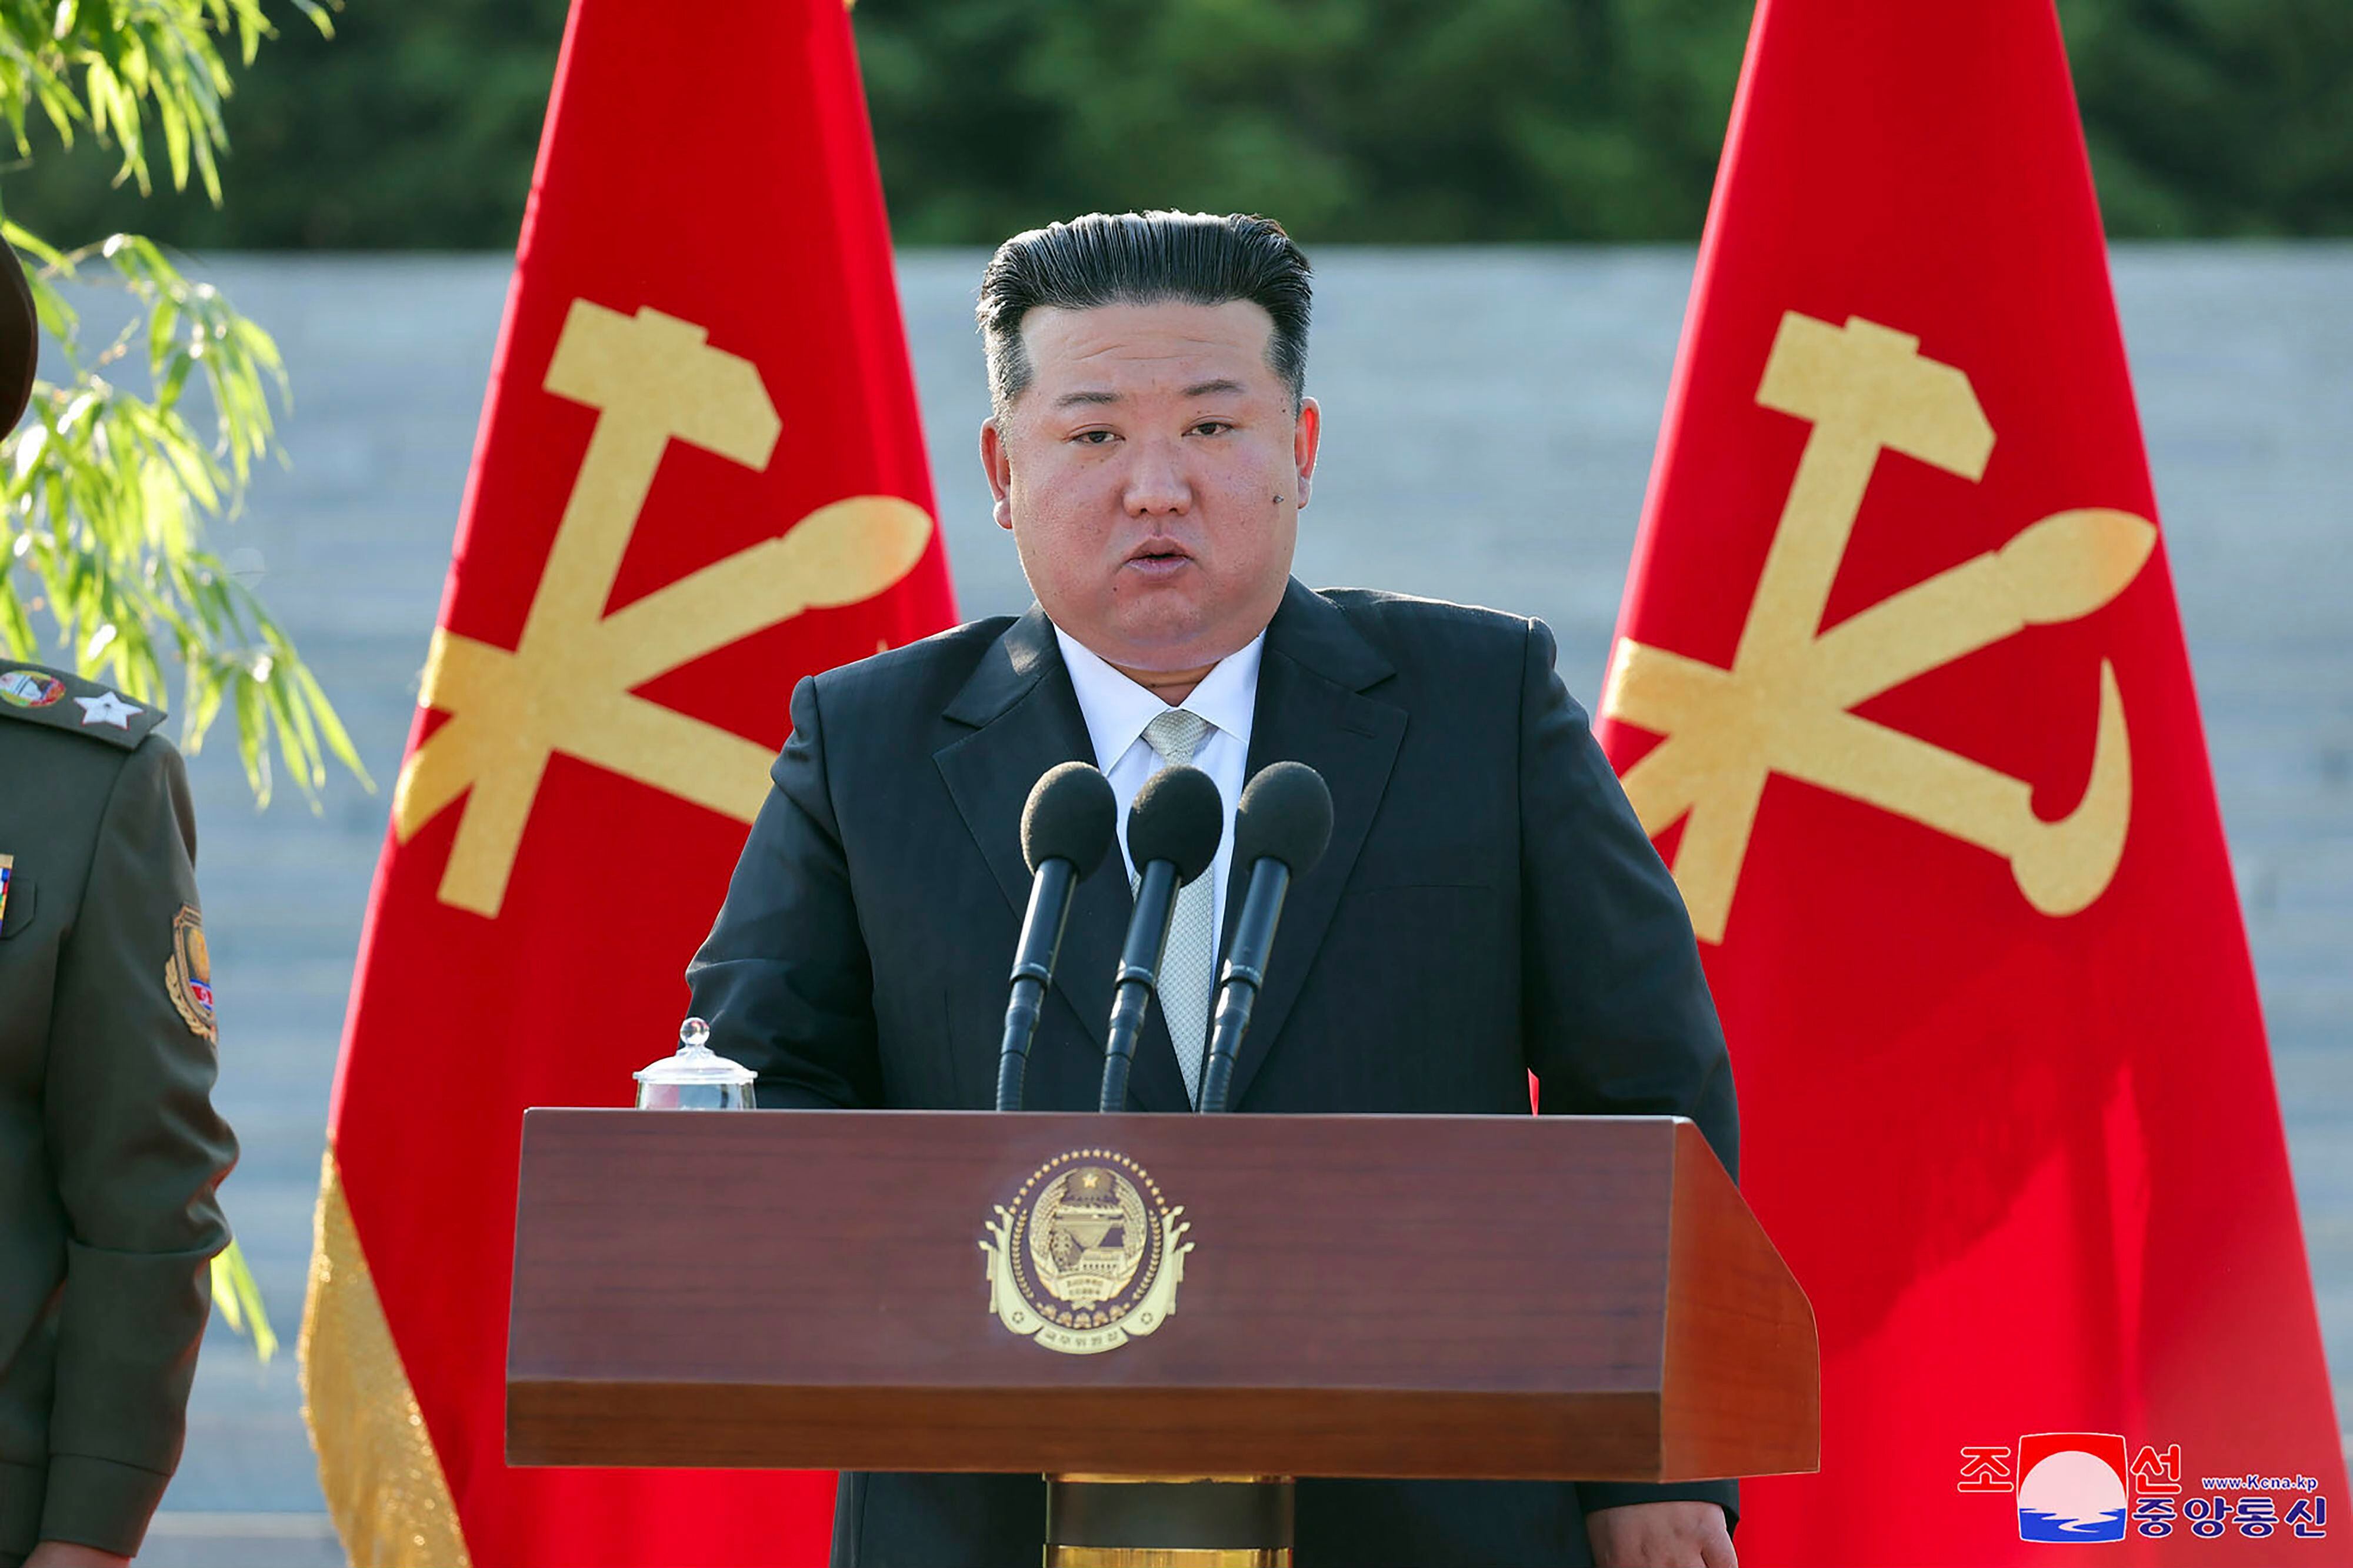 El líder de Corea del Norte, Kim Jong Un. (Agencia Central de Noticias de Corea/Servicio de noticias de Corea via AP)